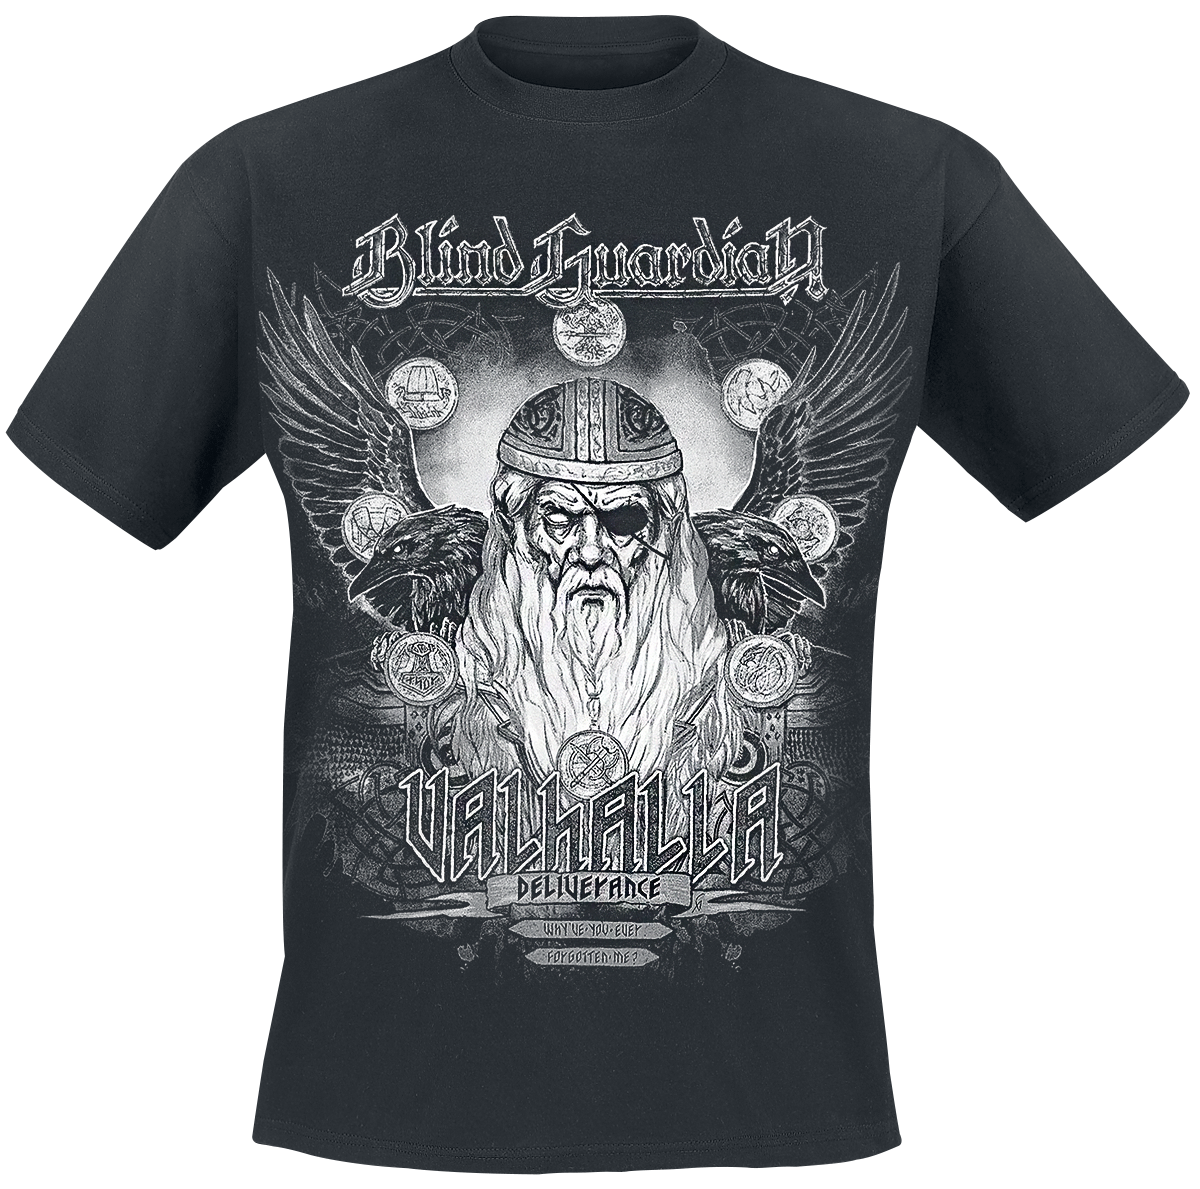 Blind Guardian - Valhalla - Deliverance - T-Shirt - black image